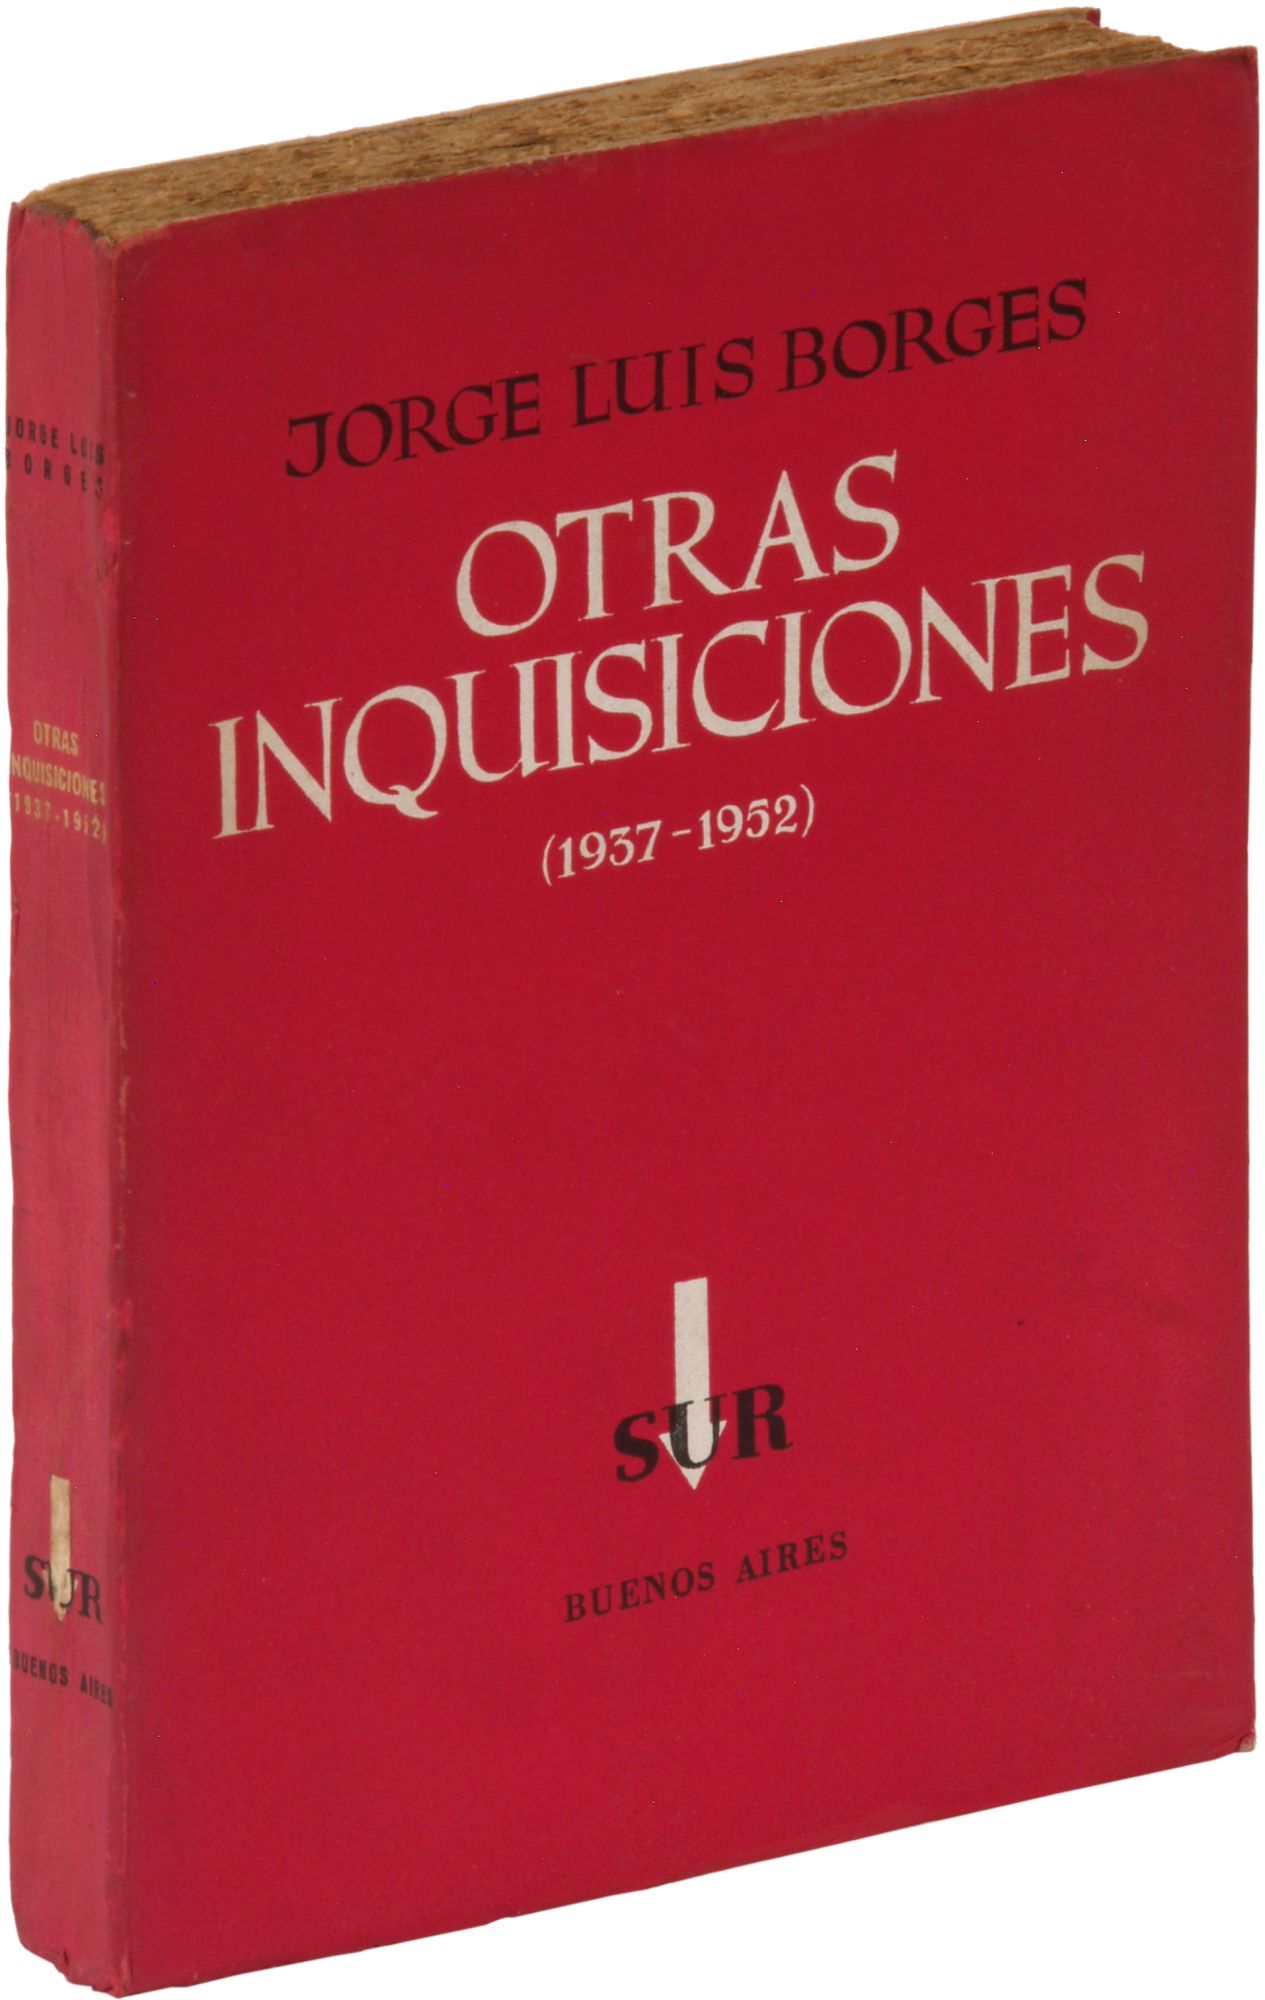 Otras inquisiciones (1937-1952) [Other Inquisitions] - BORGES, Jorge Luis